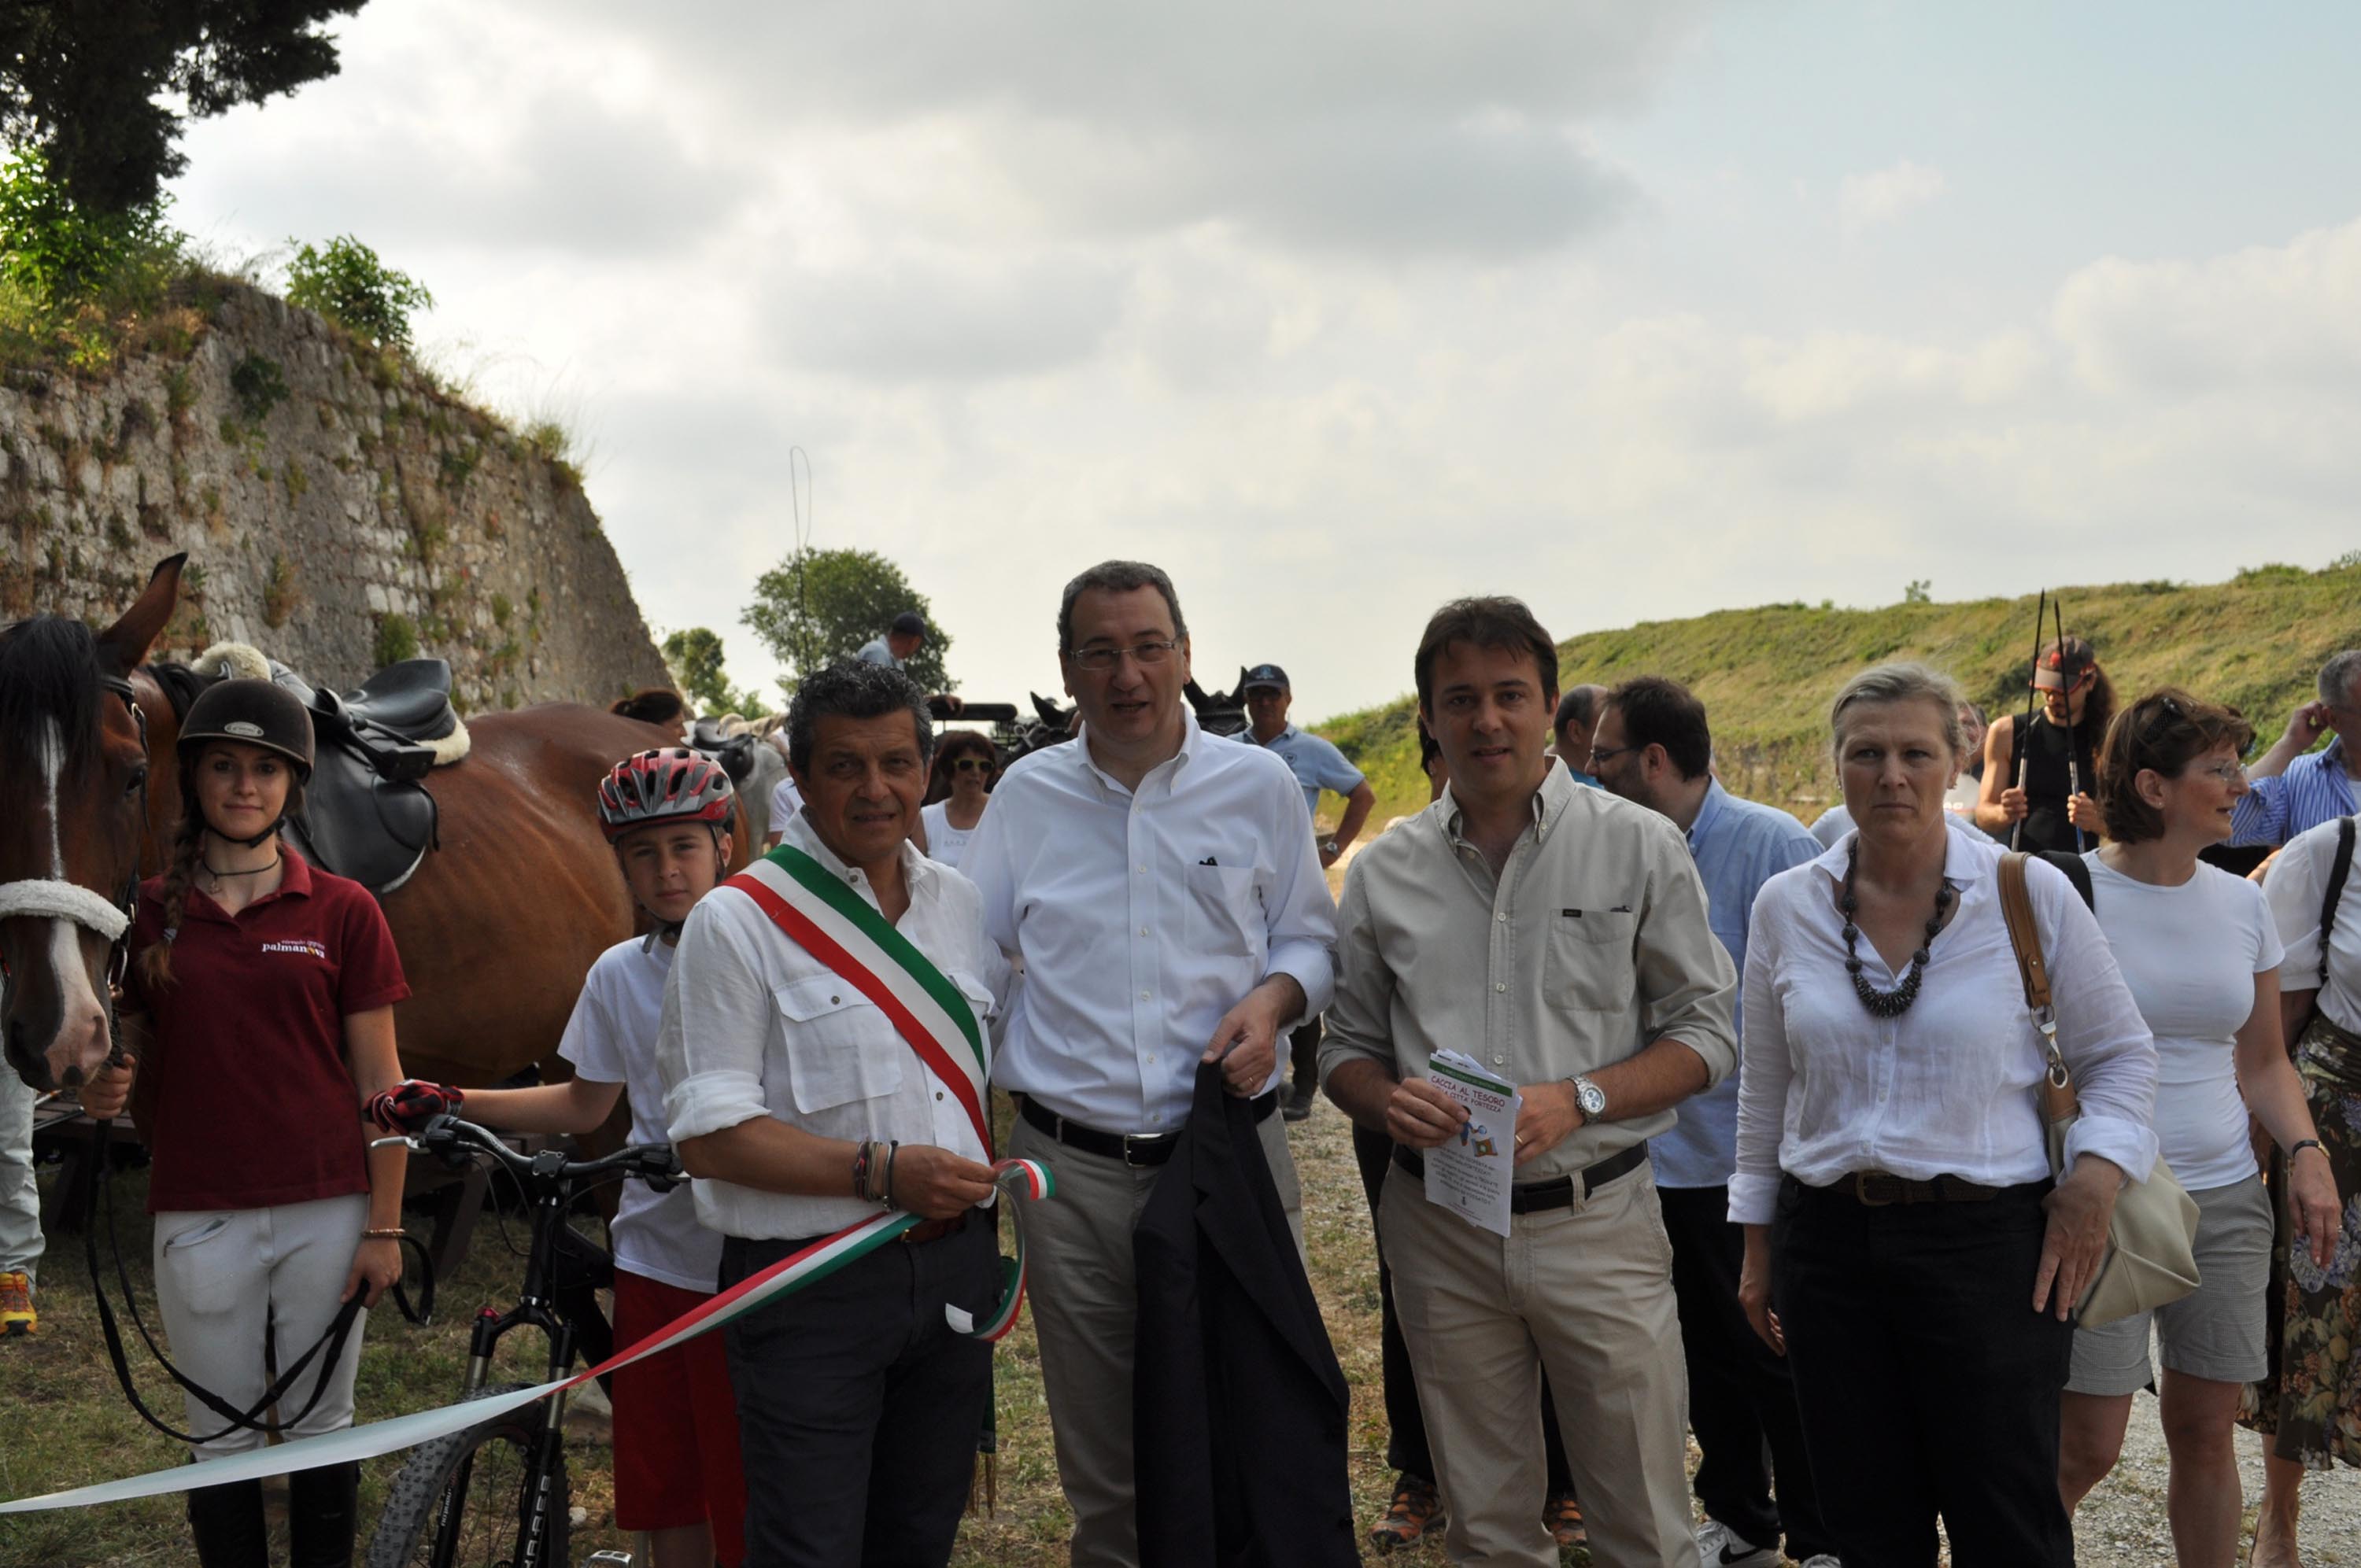 Francesco Martines (Sindaco Palmanova) e Sergio Bolzonello (Vicepresidente FVG e assessore regionale Attività produttive) all'inaugurazione dei percorsi turistici del Parco storico dei Bastioni. (Palmanova 23/06/13)